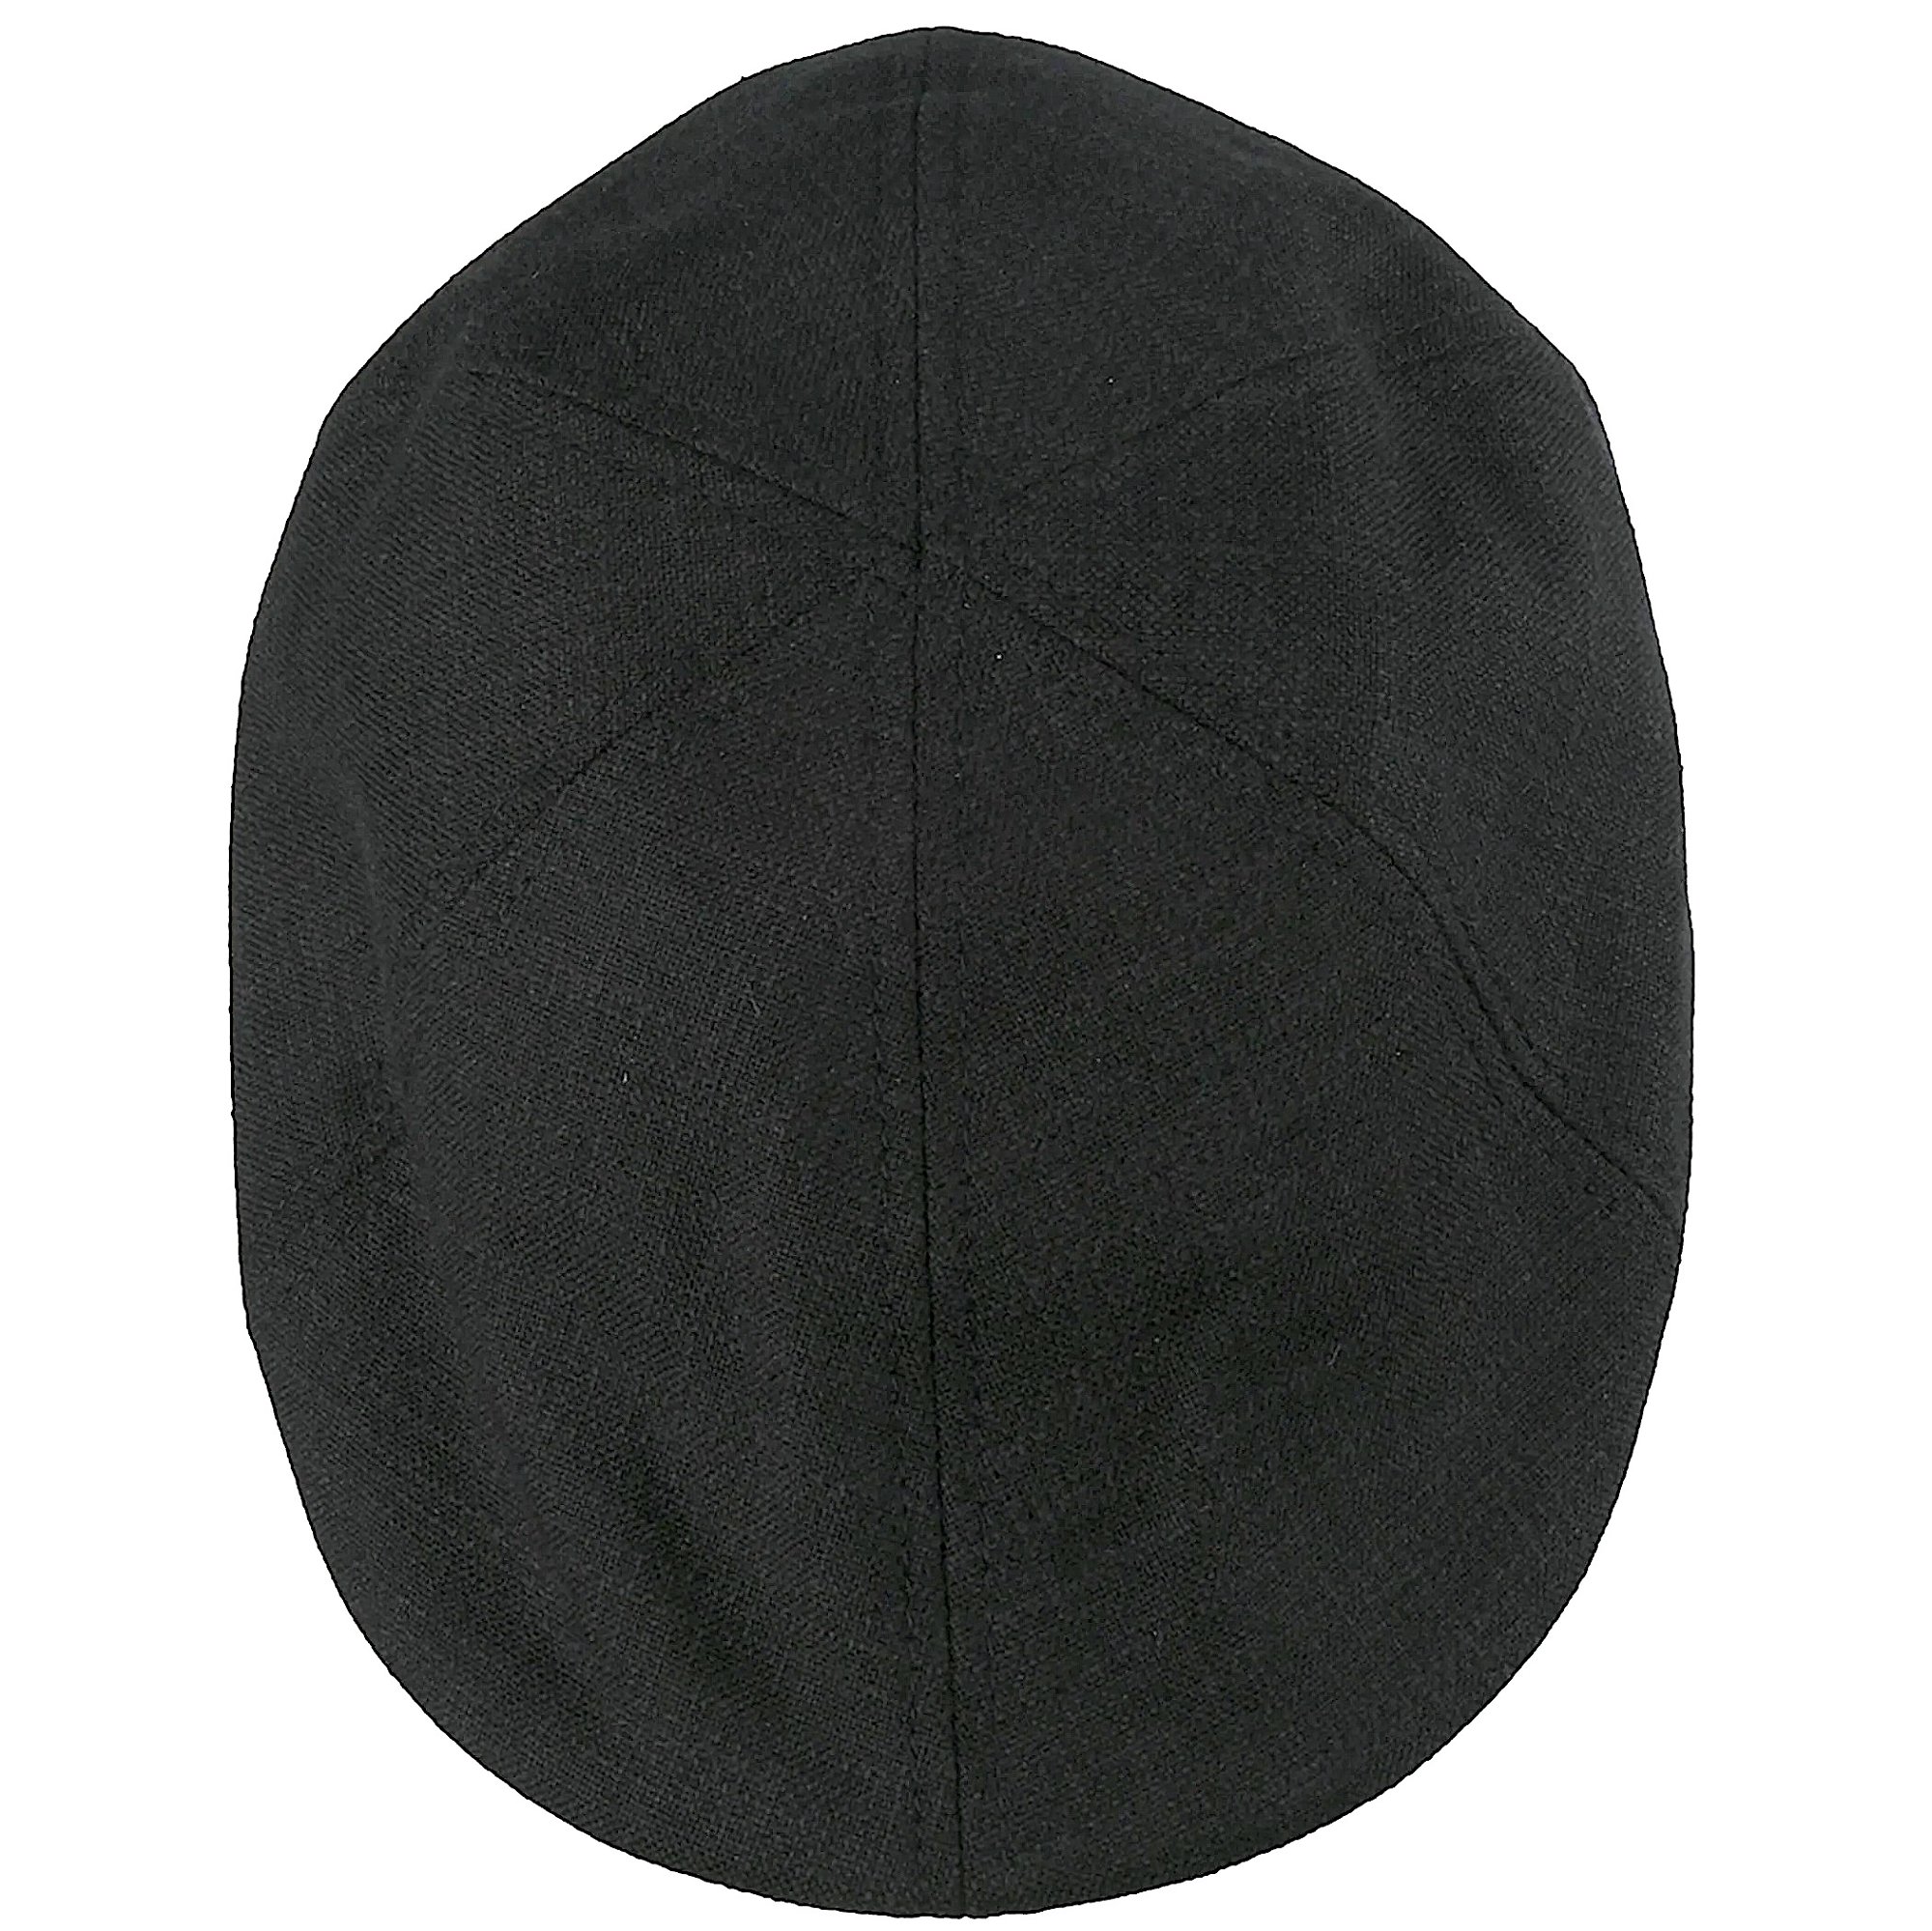 Echtes Produkt für ein beruhigendes Gefühl Sommer Flatcap Schiebermütze im modernen Gatsbystil, schwarz